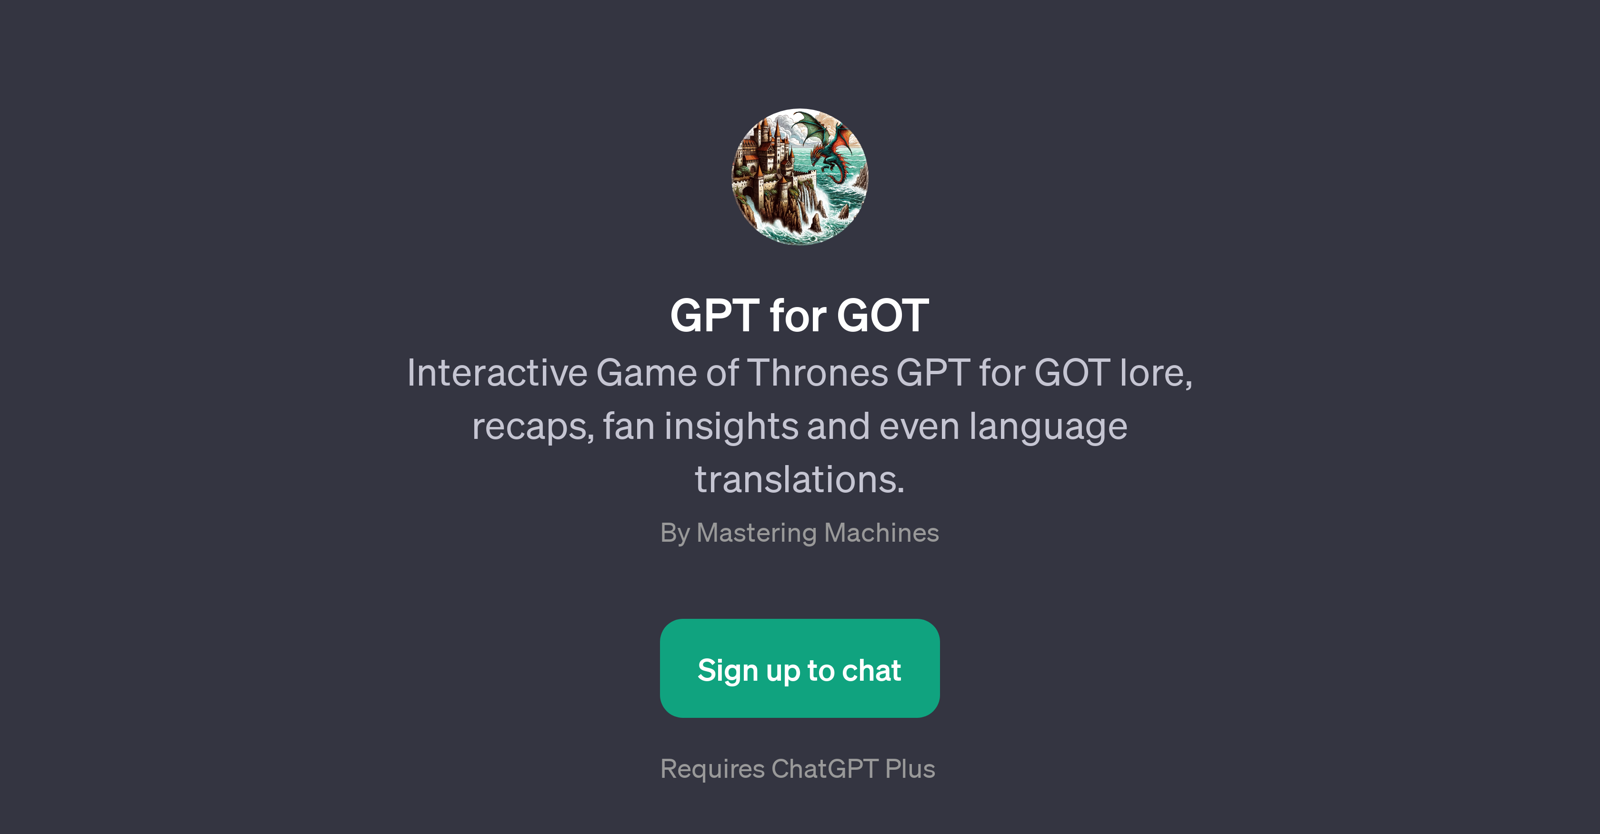 GPT for GOT website